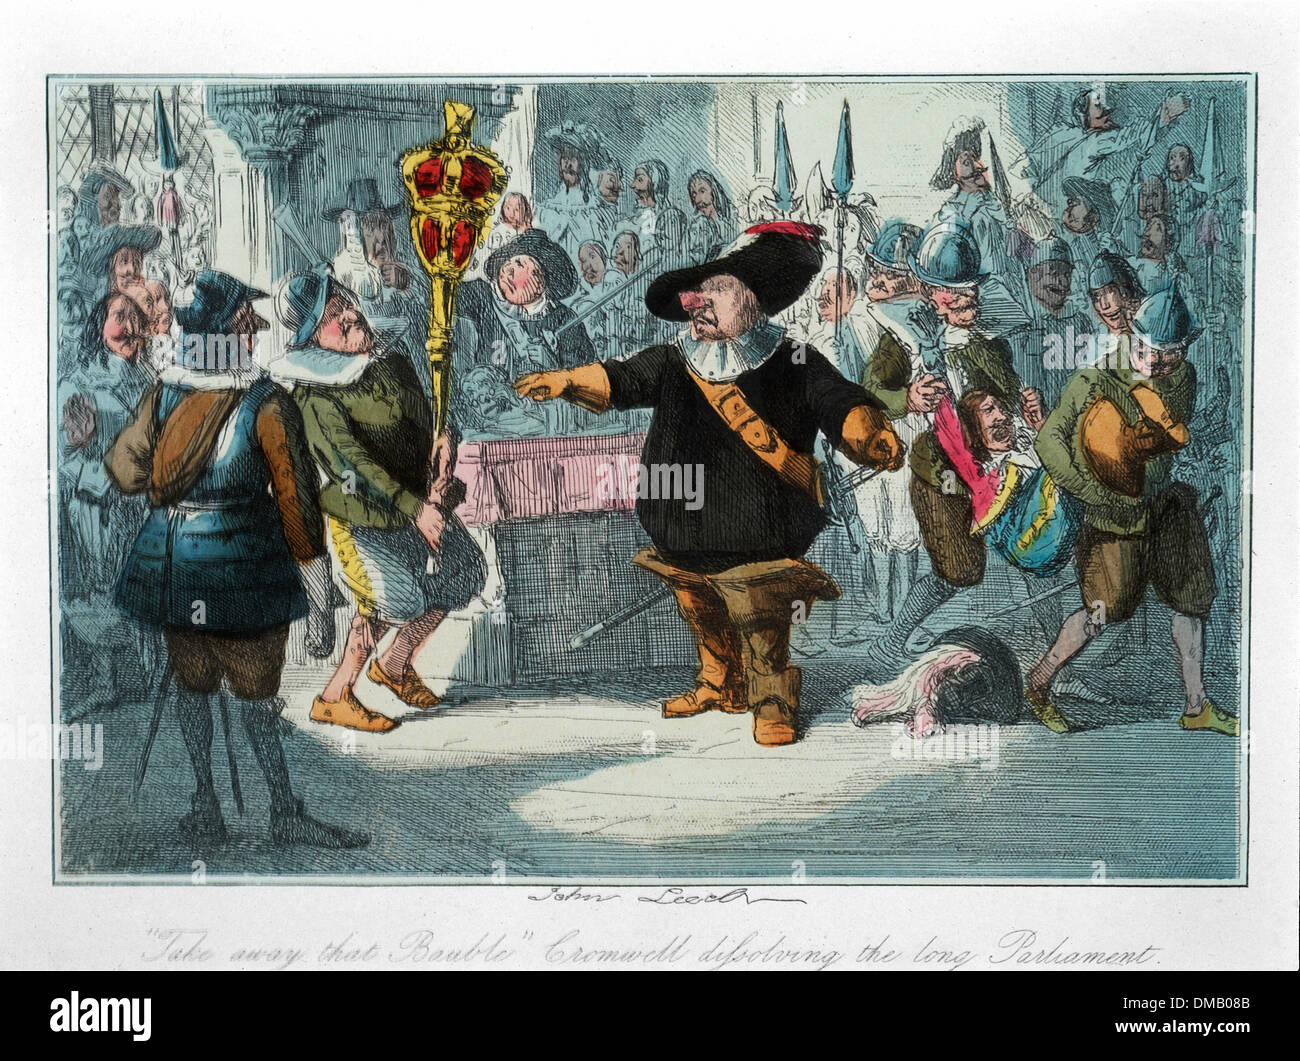 Take Away, Christbaumkugel, Cromwell auflösen, das lange Parlament, Comic-Geschichte von England, Radierung von John Leech, 1850 gefärbt Stockfoto